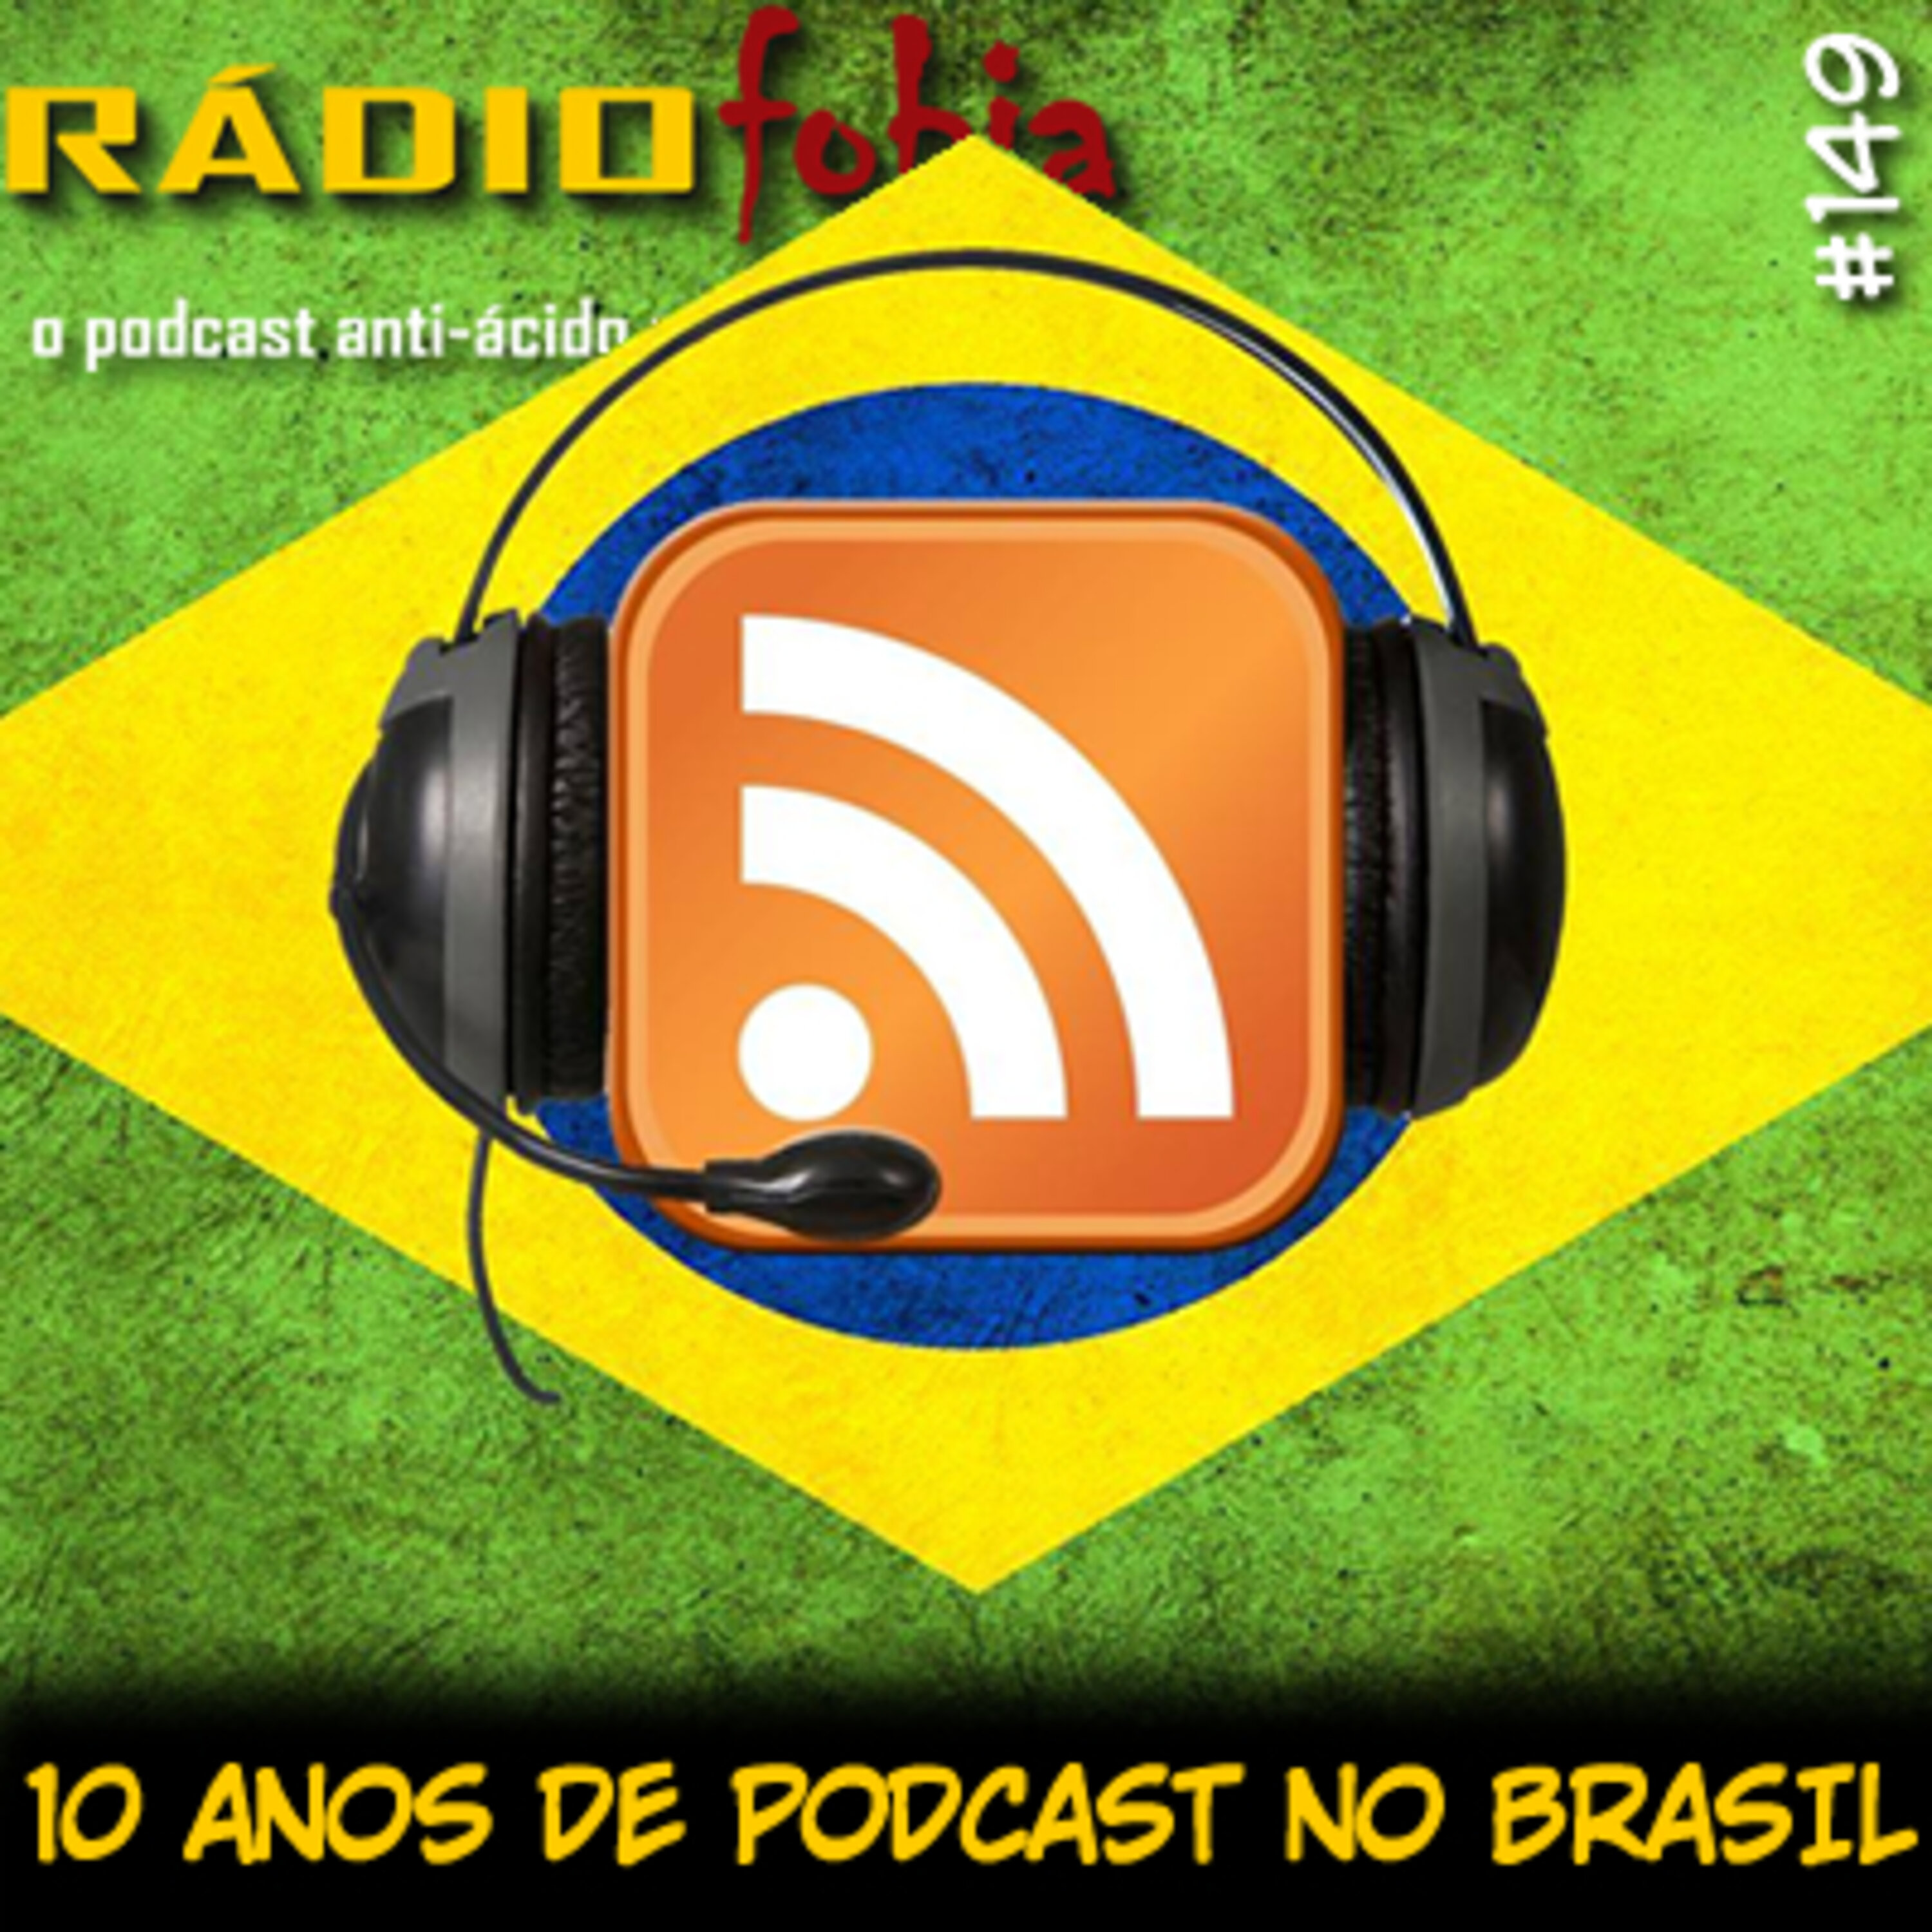 RADIOFOBIA 149 – 10 anos de podcast no Brasil